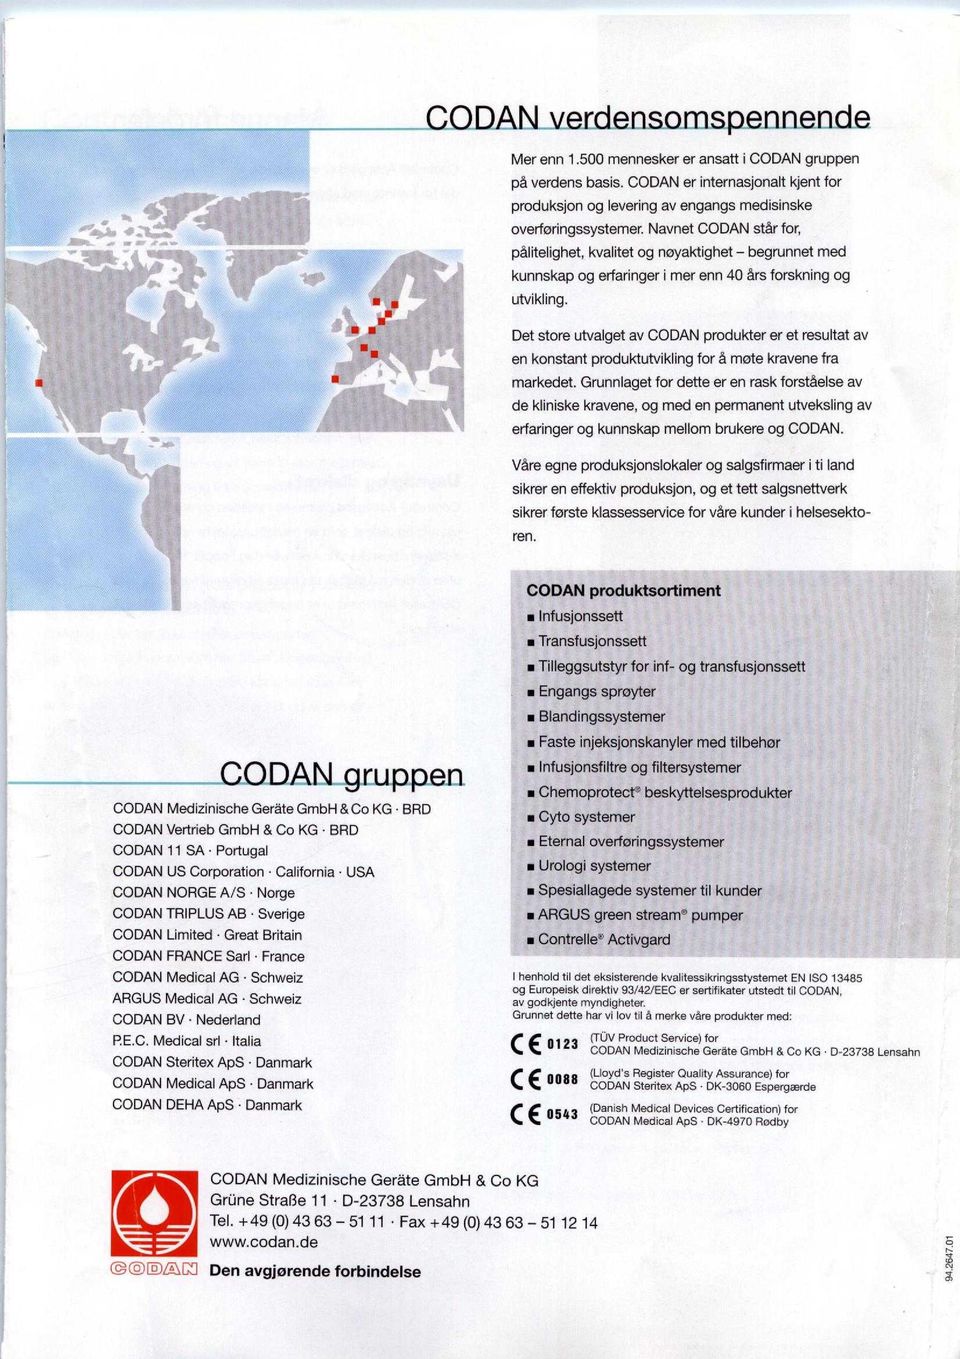 Det store utvalget av CODAN produkter er et resultat av en konstant produktutvikling for a mote kravene fra markedet.